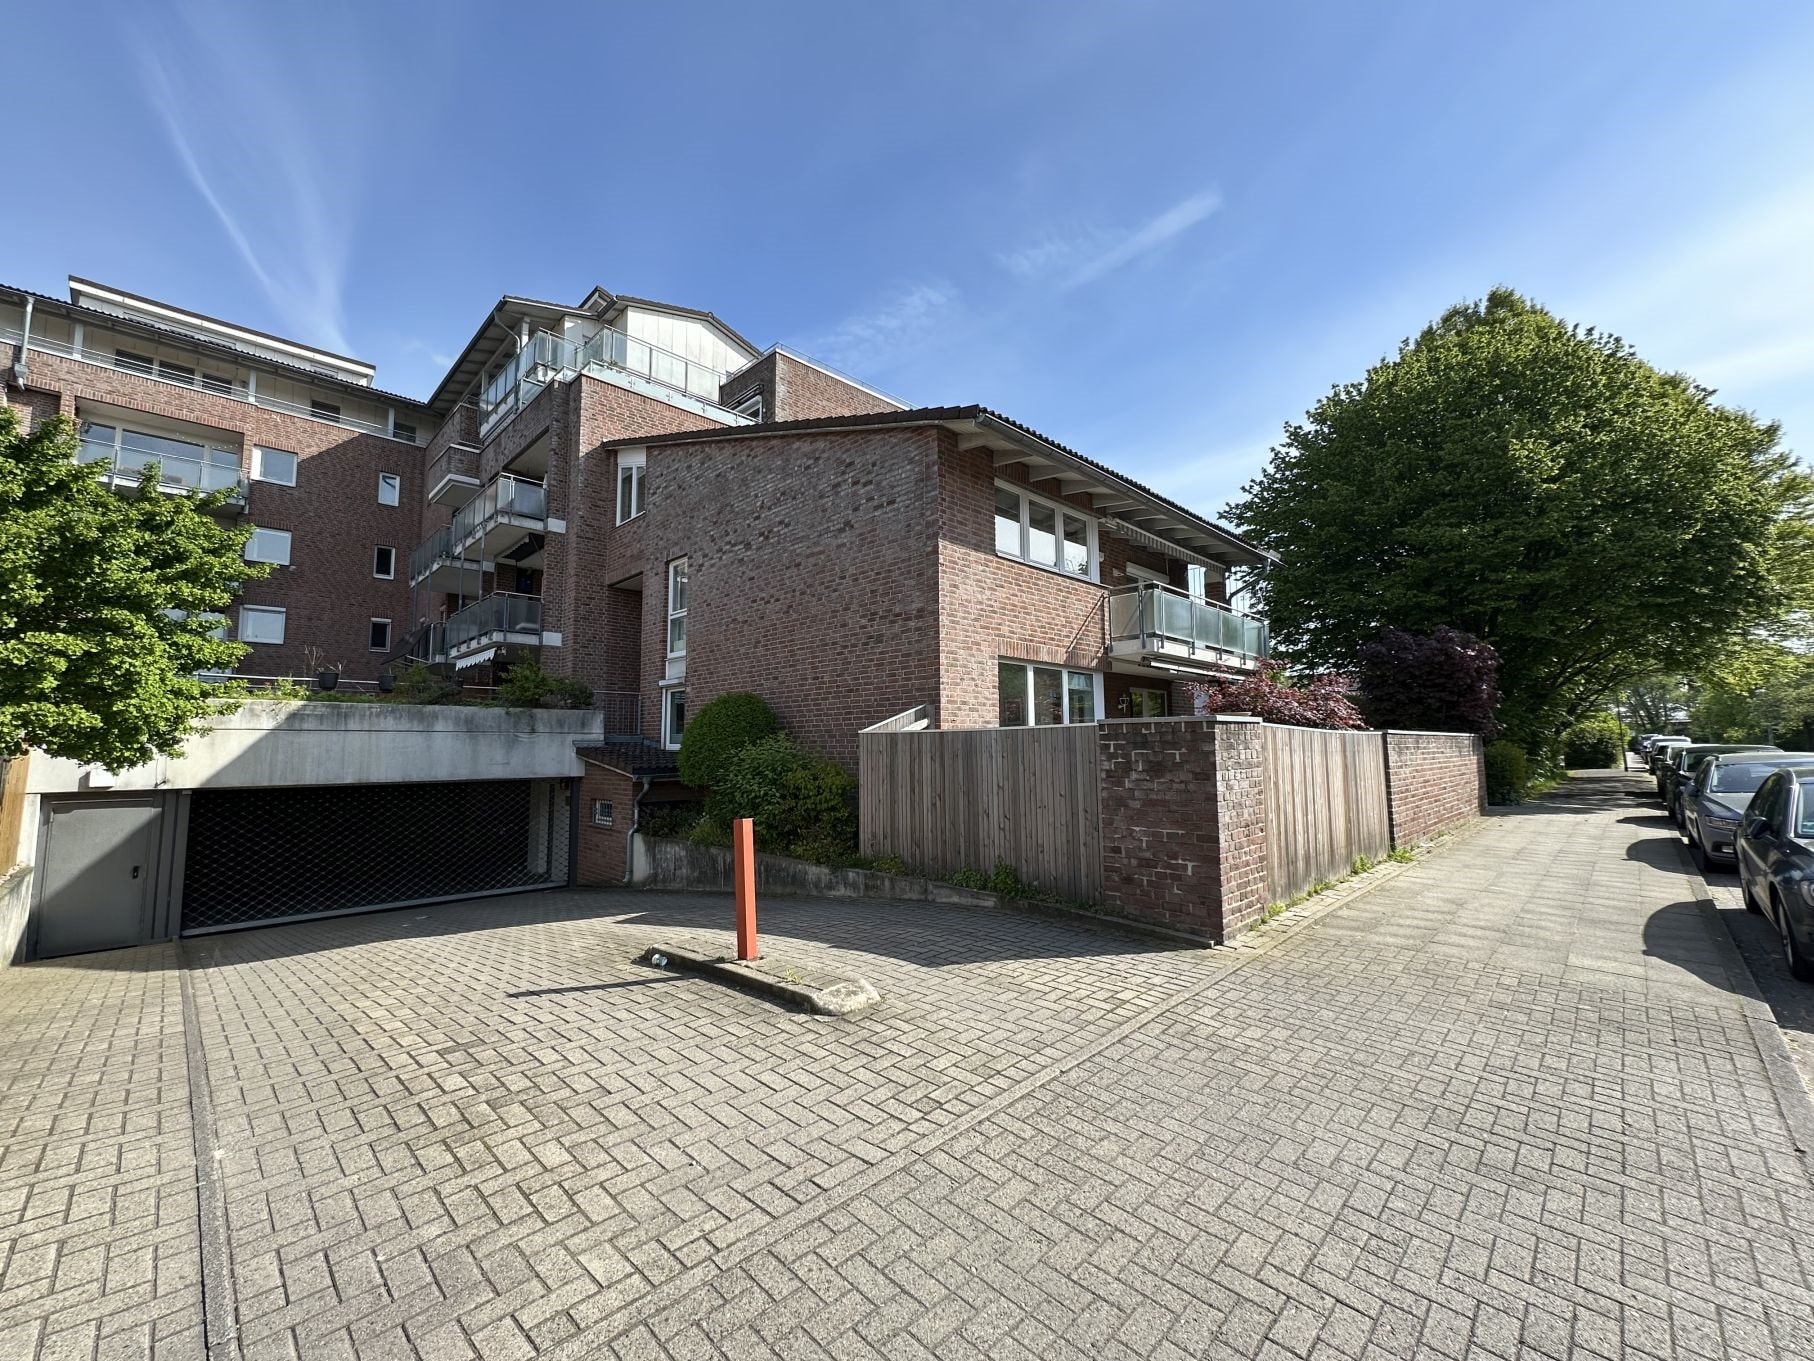 Maisonettewohnung mit eigenem Eingang in Hannover-Sahlkamp, 30657 Hannover, Maisonettewohnung